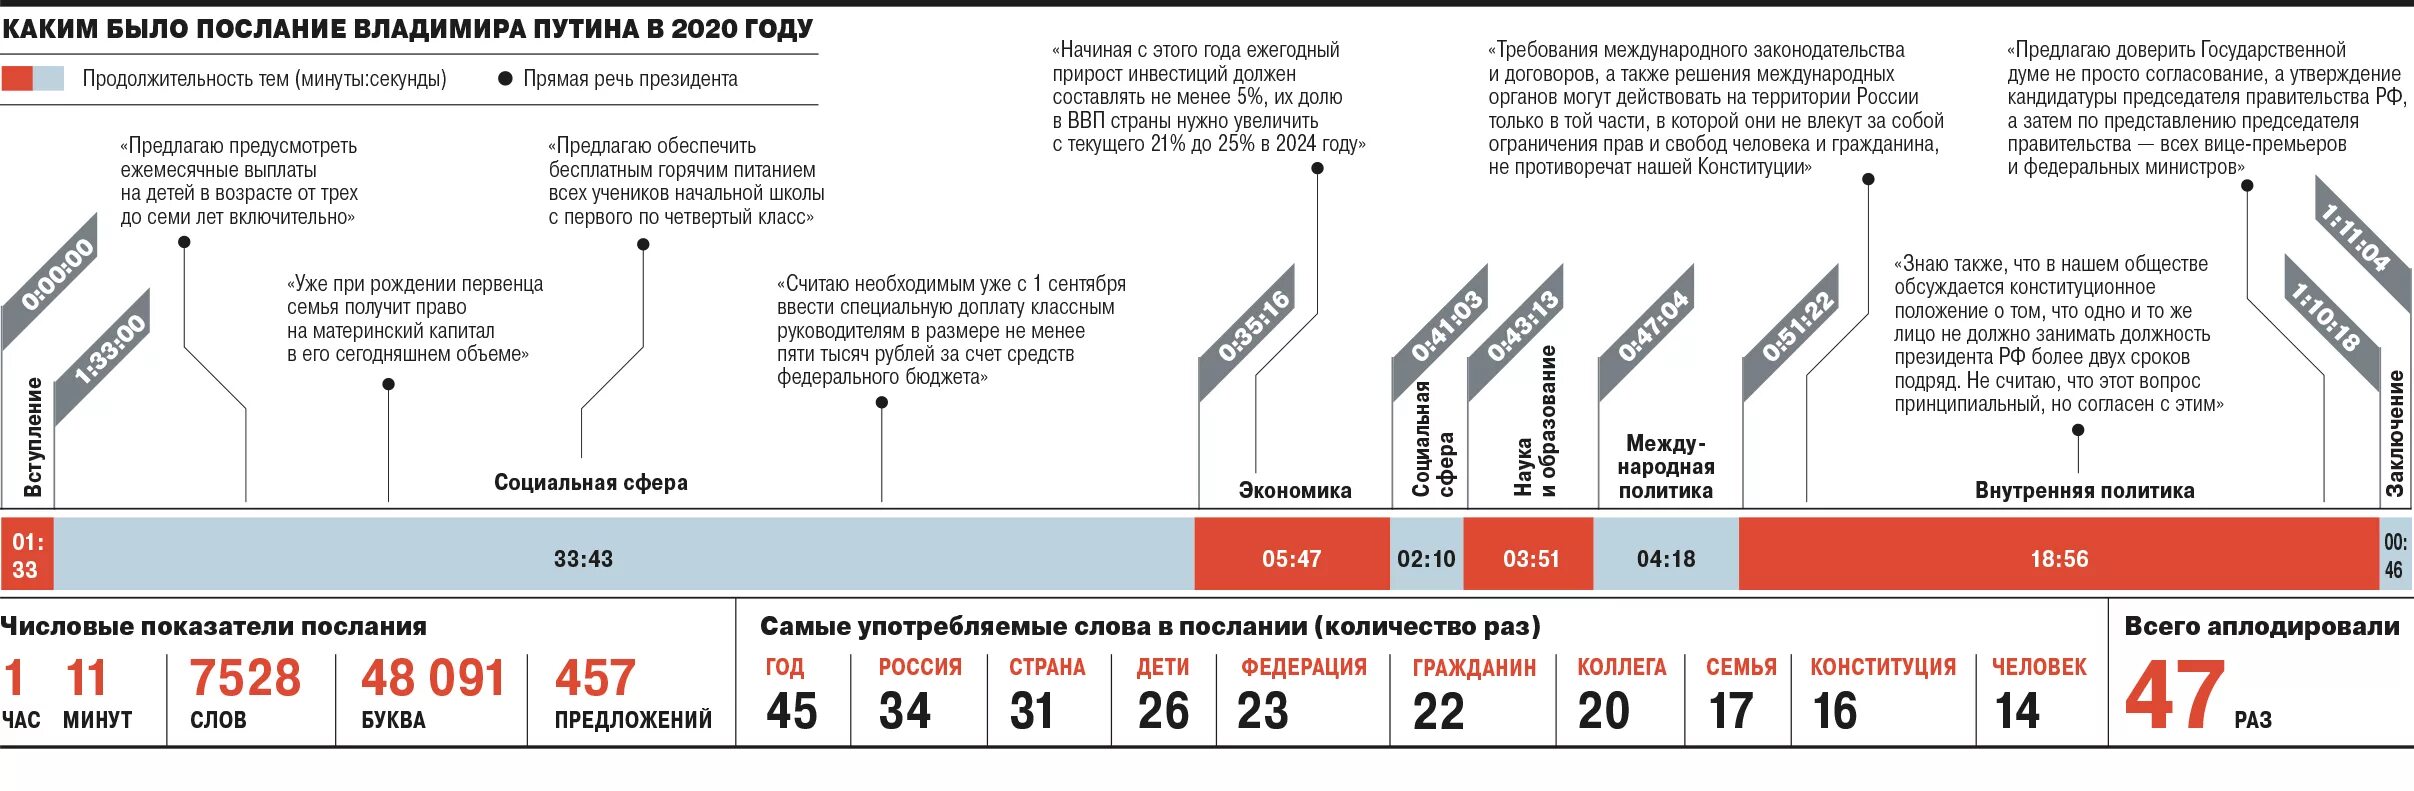 Какой год 2020 россия. Поправки в Конституцию инфографика. Принятие поправок в Конституцию РФ 2020.